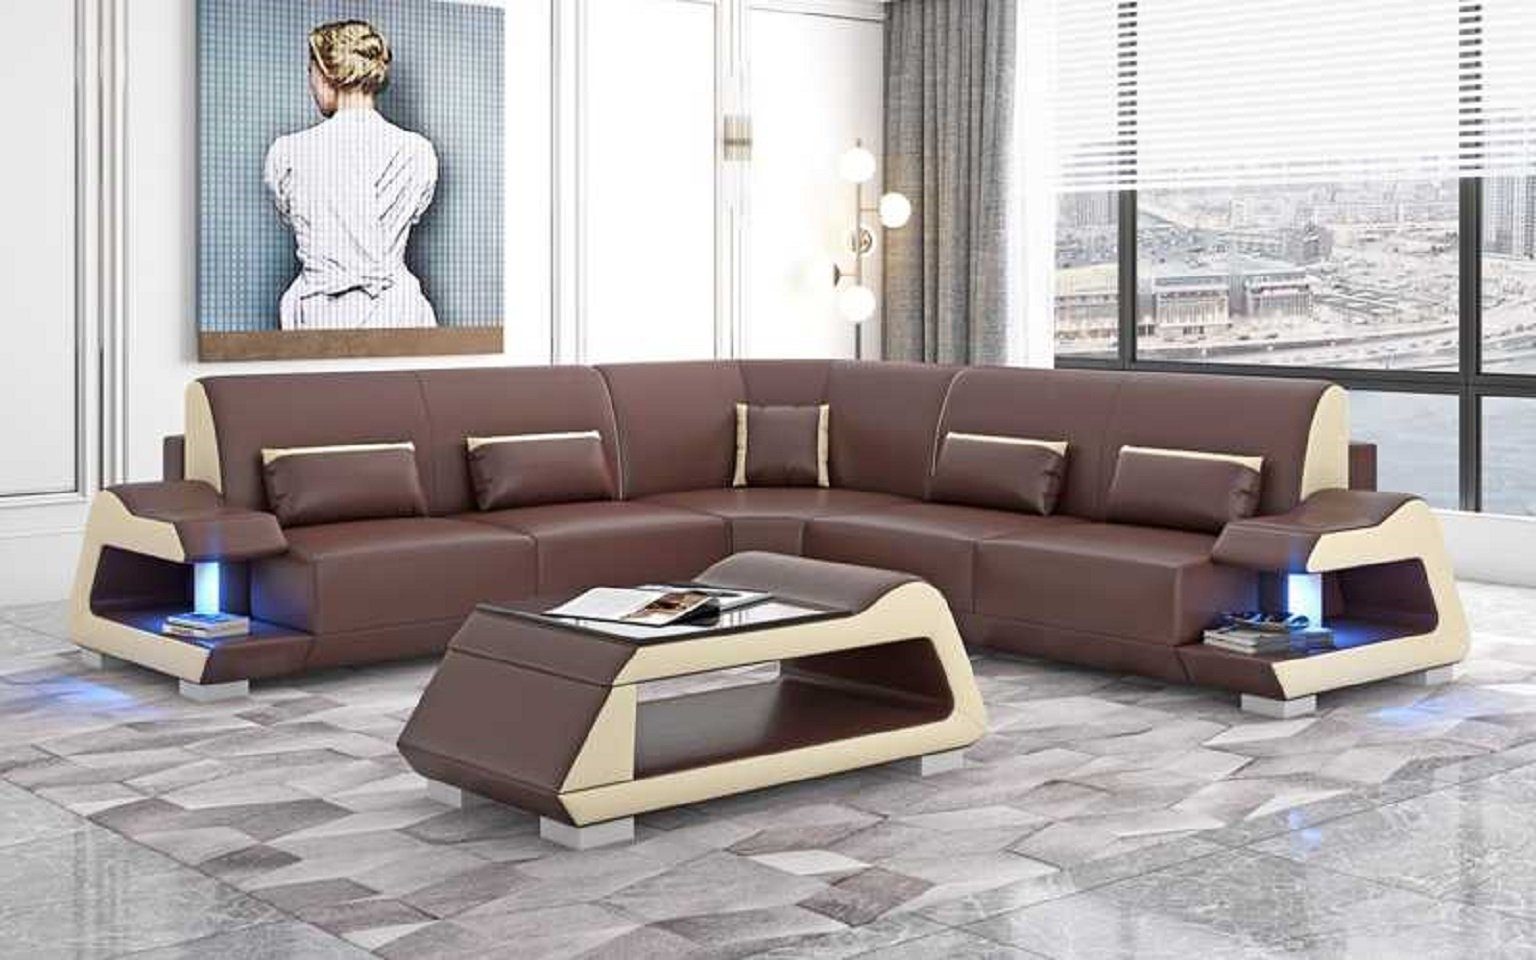 JVmoebel Ecksofa Luxus Ecksofa L Form Sofa Eckgarnitur Wohnzimmer Sofas, 3 Teile, Made in Europe Braun